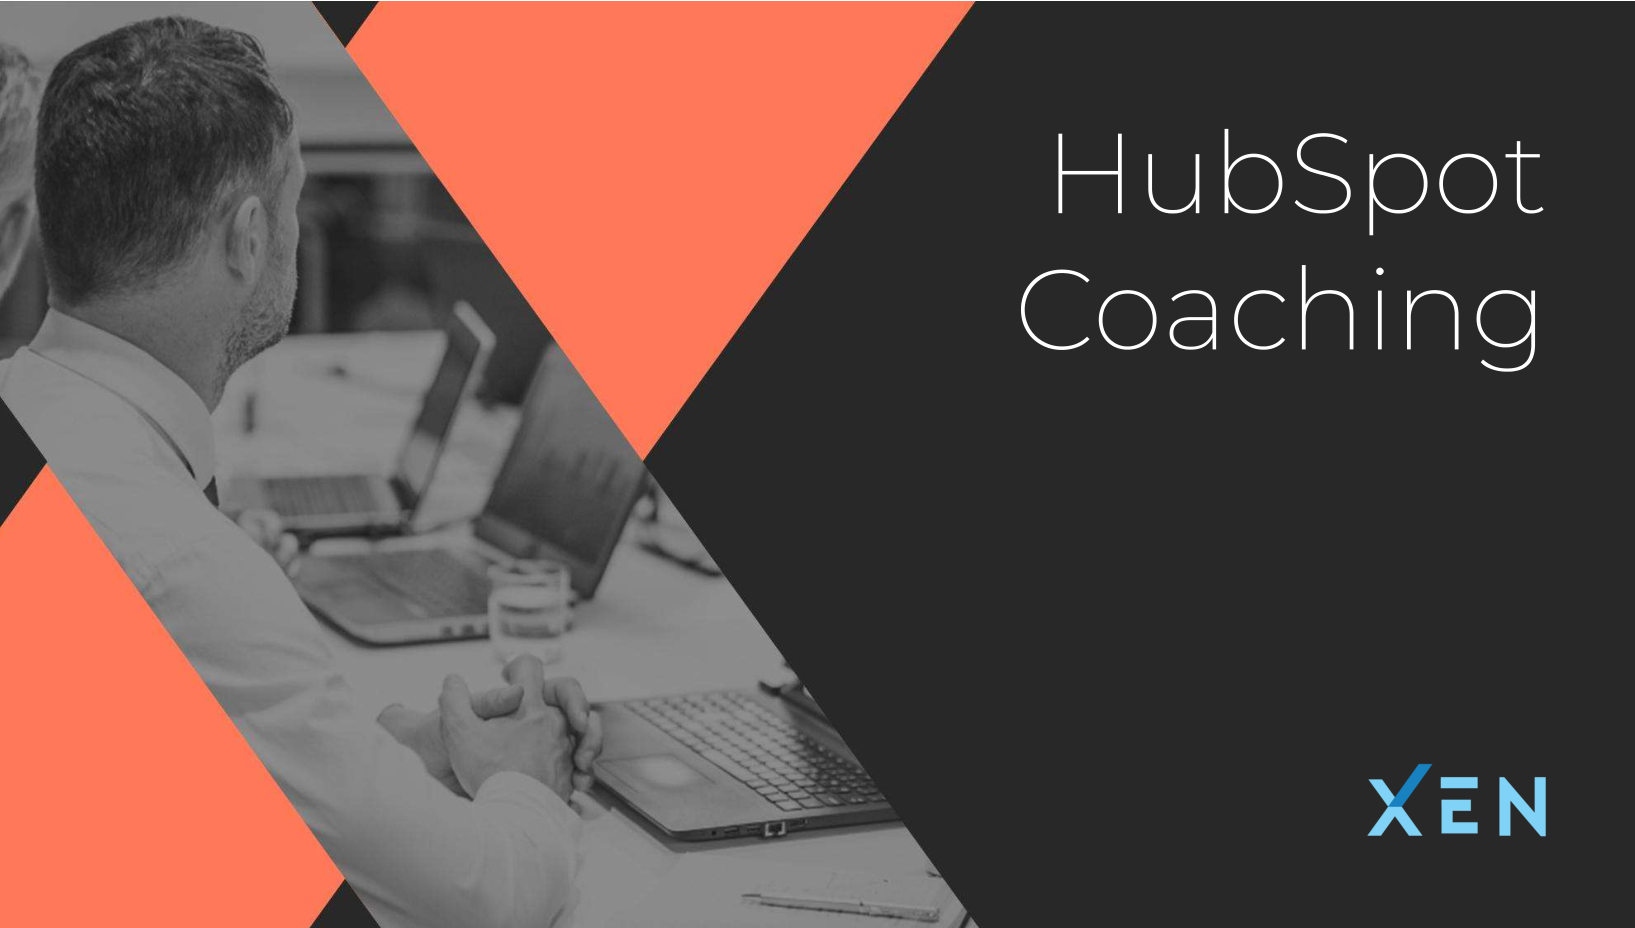 XEN HubSpot Coaching Image